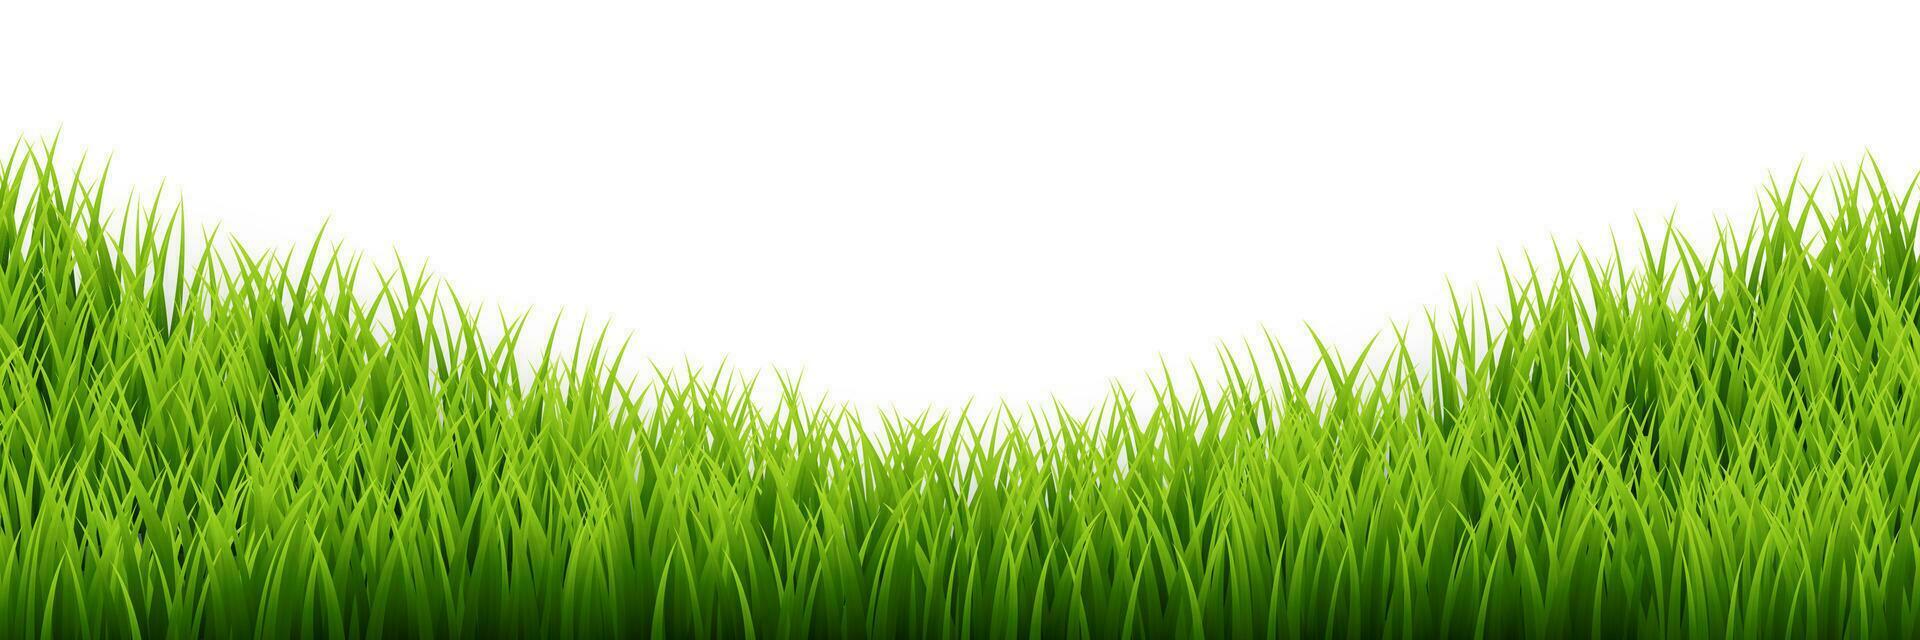 grön gräs gräns uppsättning på vit bakgrund. vektor illustration